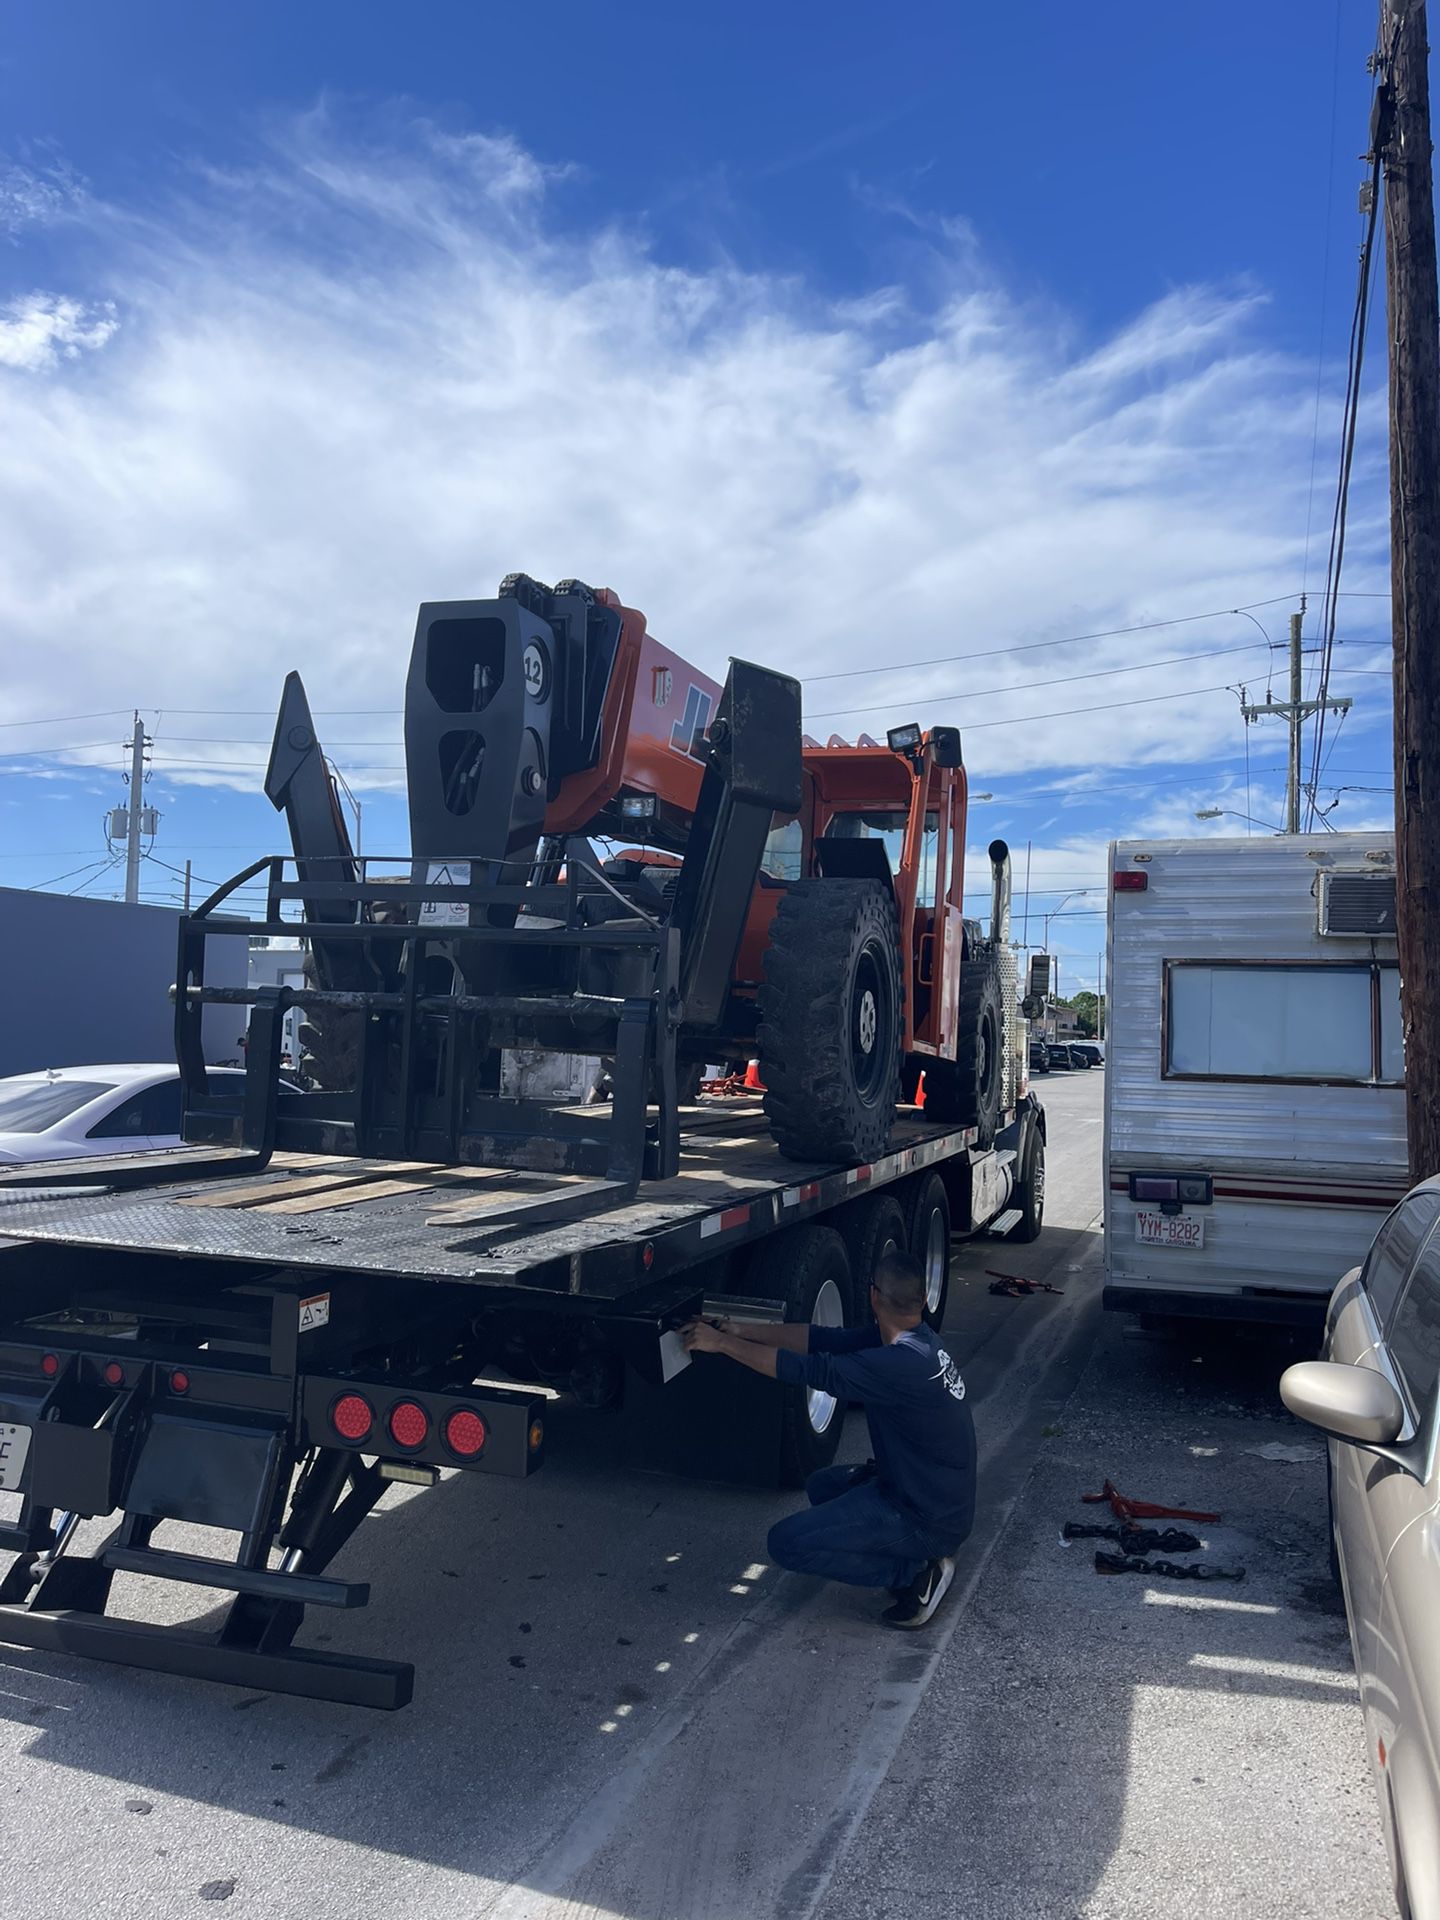 Forklift Tele handle 12,000